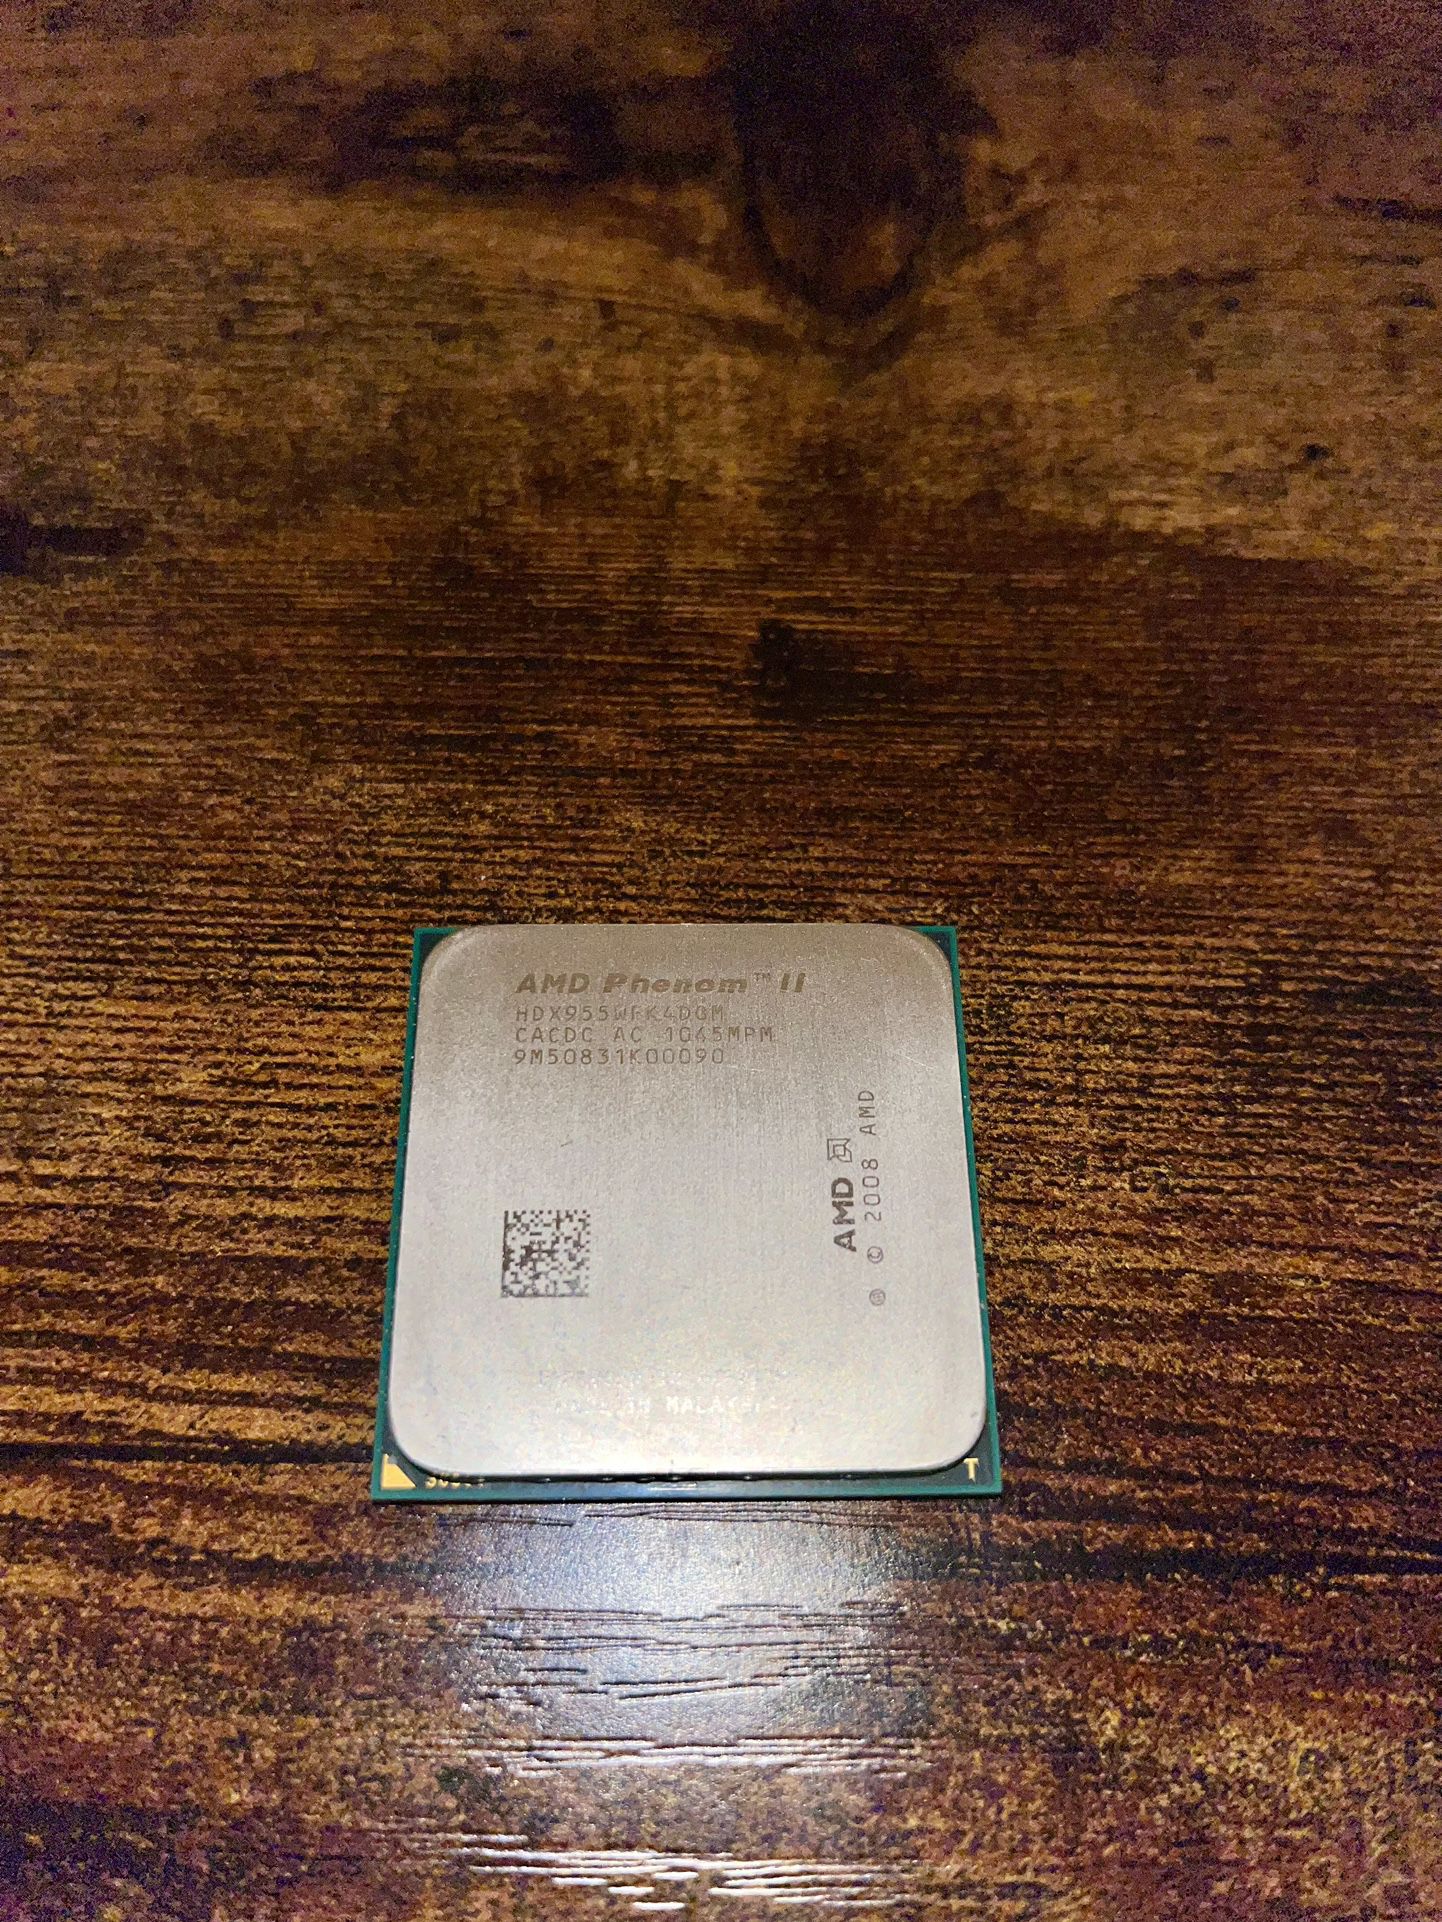 AMD Phenom II CPU